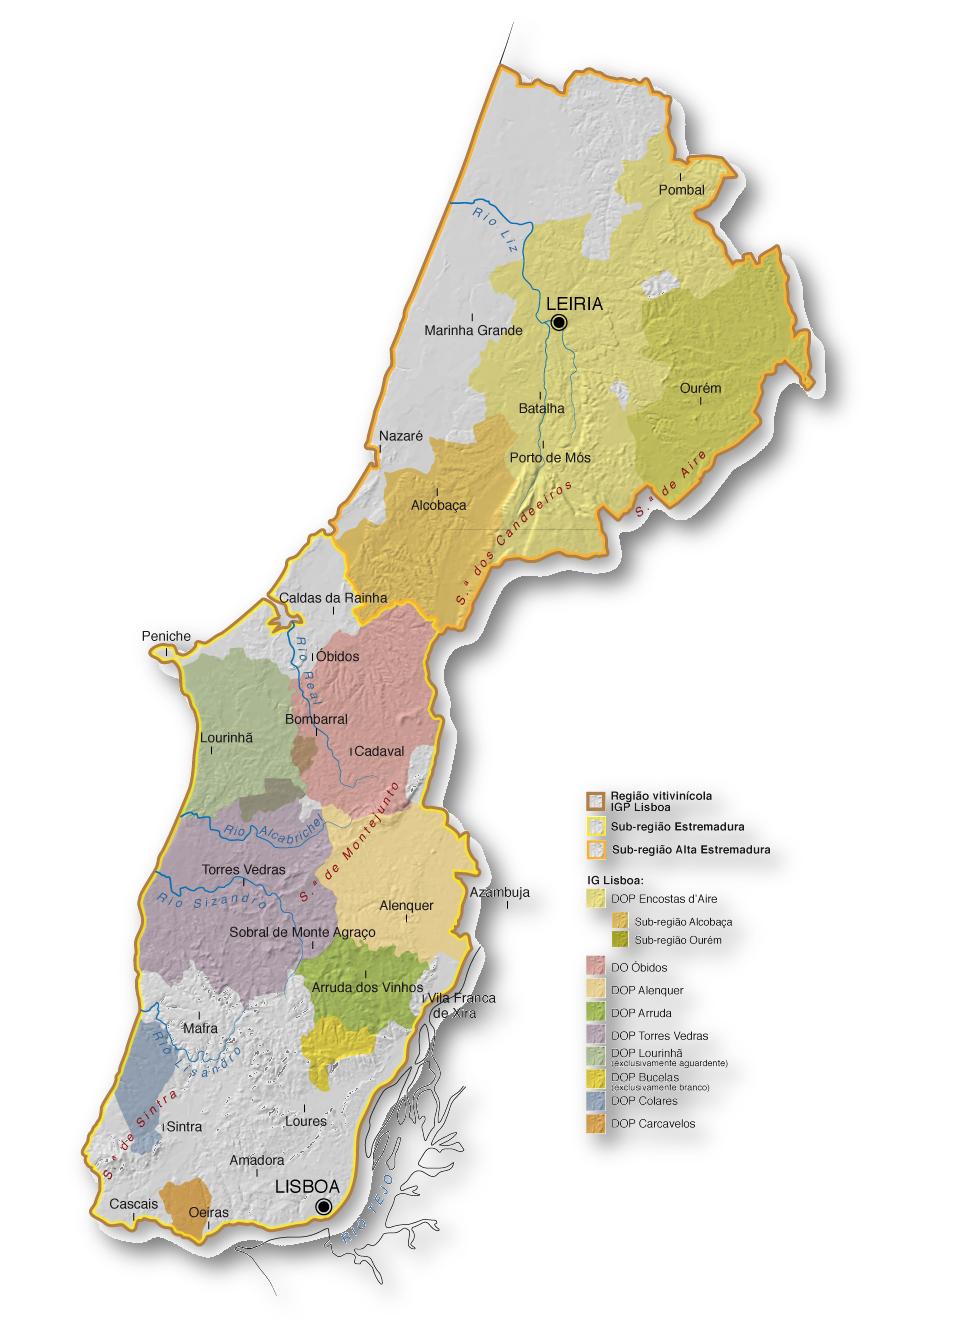 Mapa da Região de Vinhos de Lisboa (clique para ampliar)